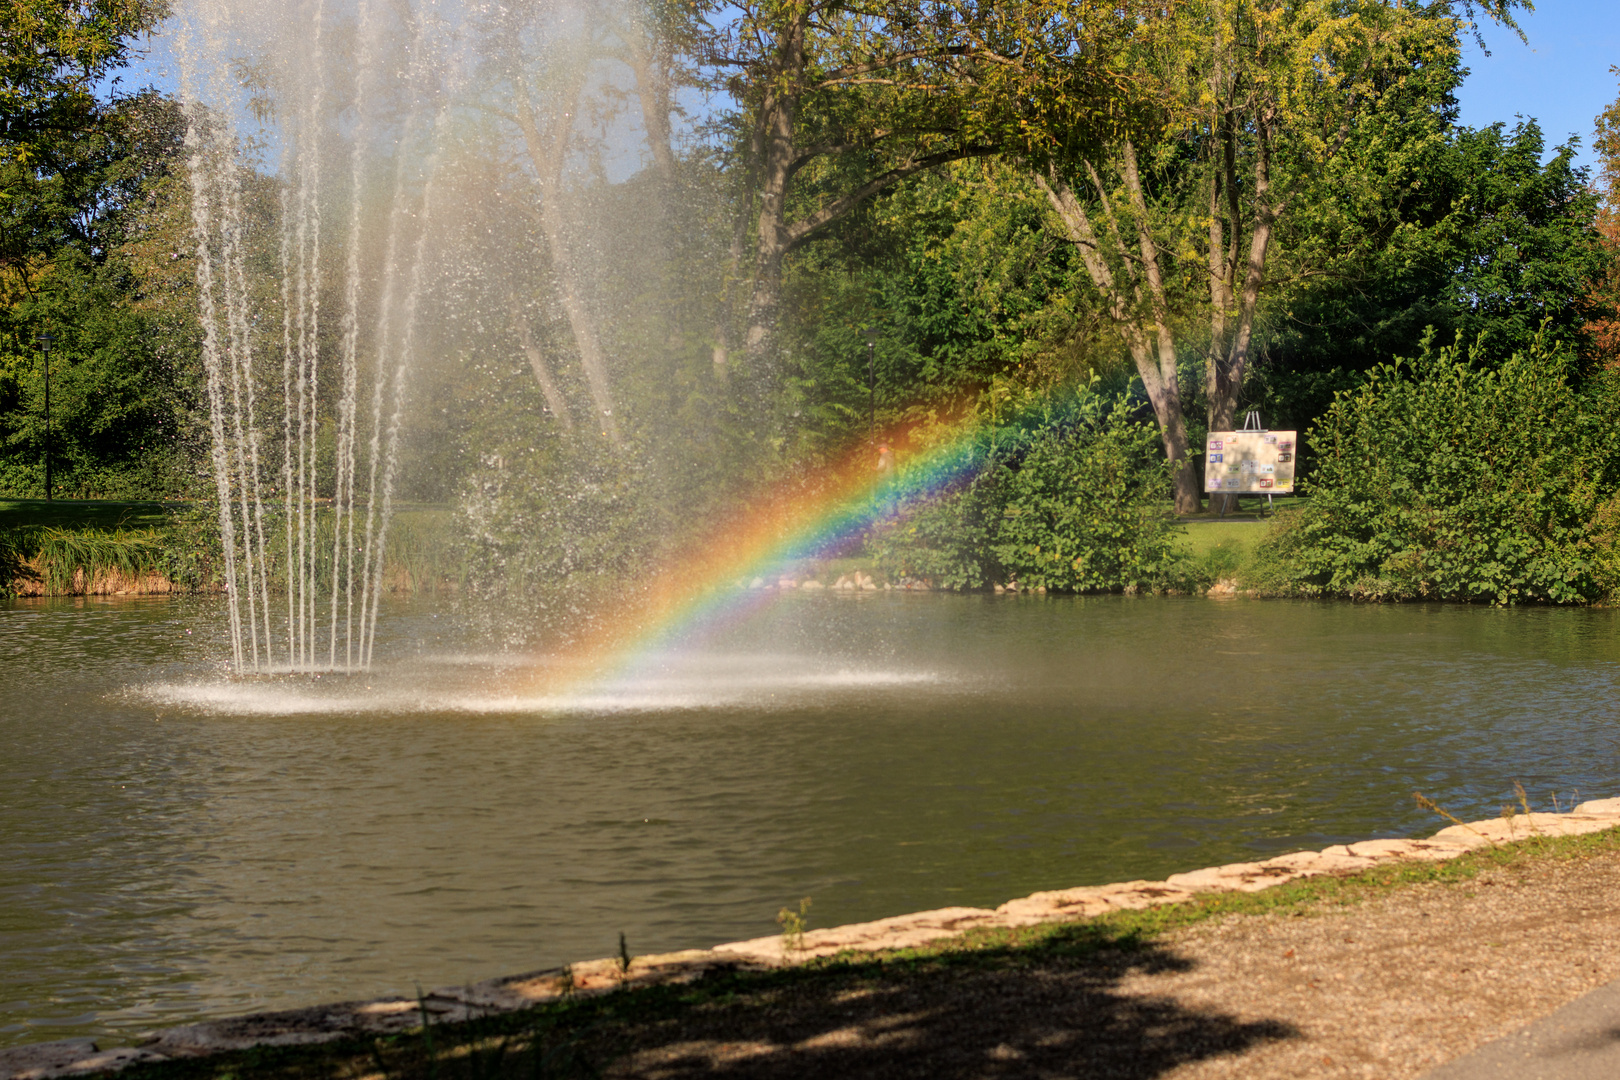 Regenbogen im Sole-Aktiv-Park